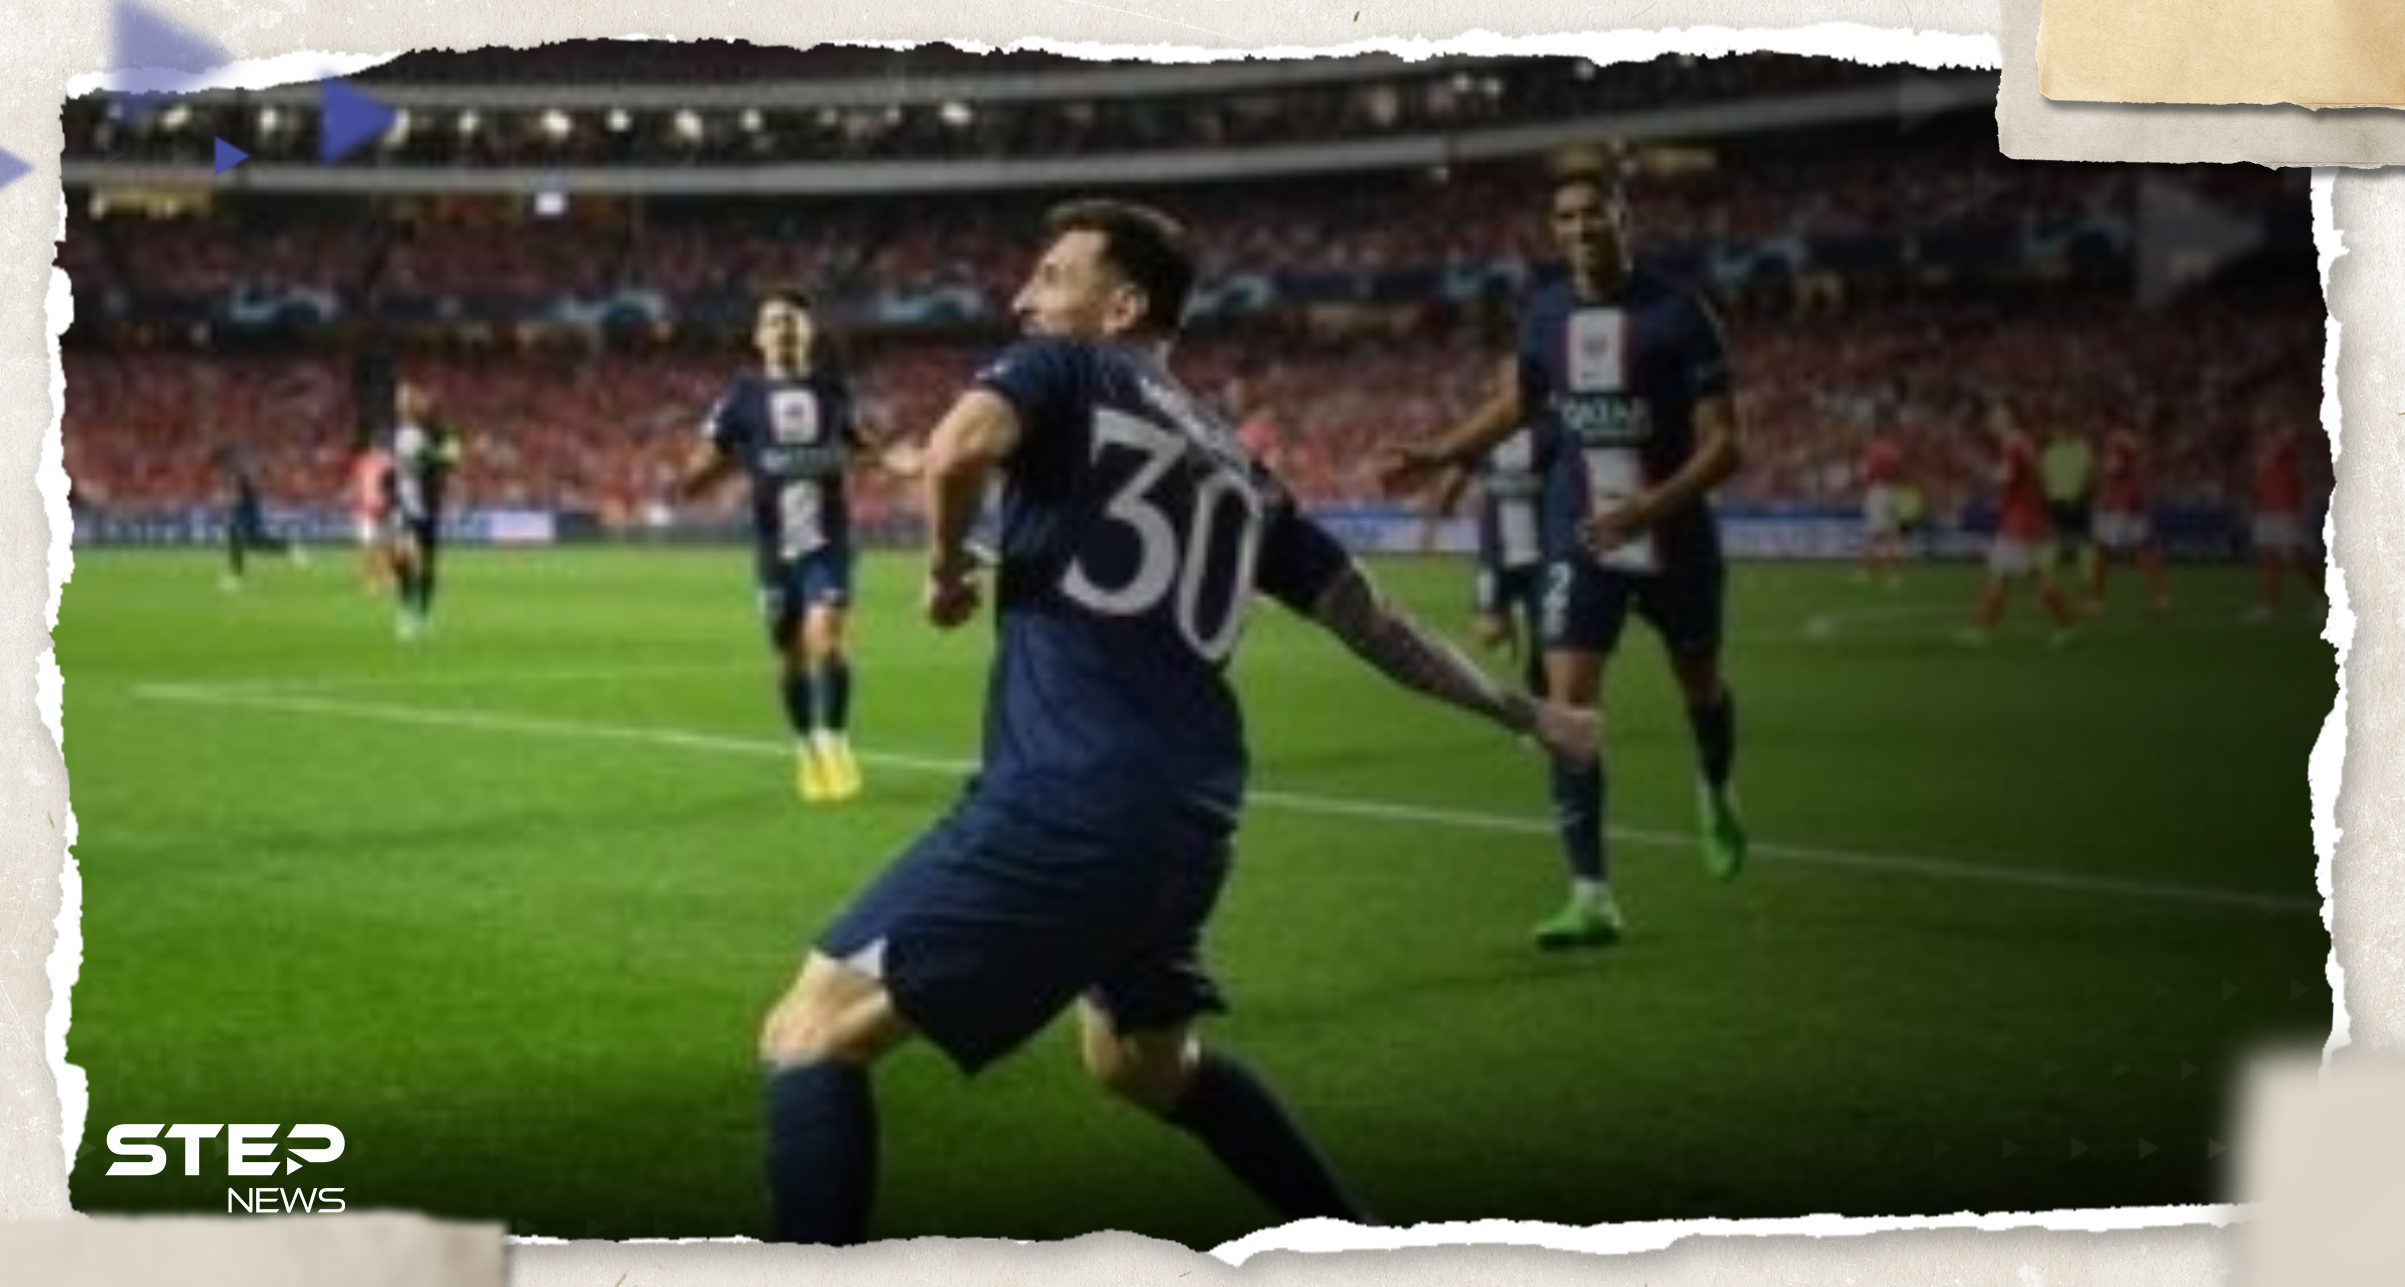 بالفيديو|| الإعلان عن أجمل هدف في دوري أبطال أوروبا..  الأول بأقدام ميسي والثالث لهالاند